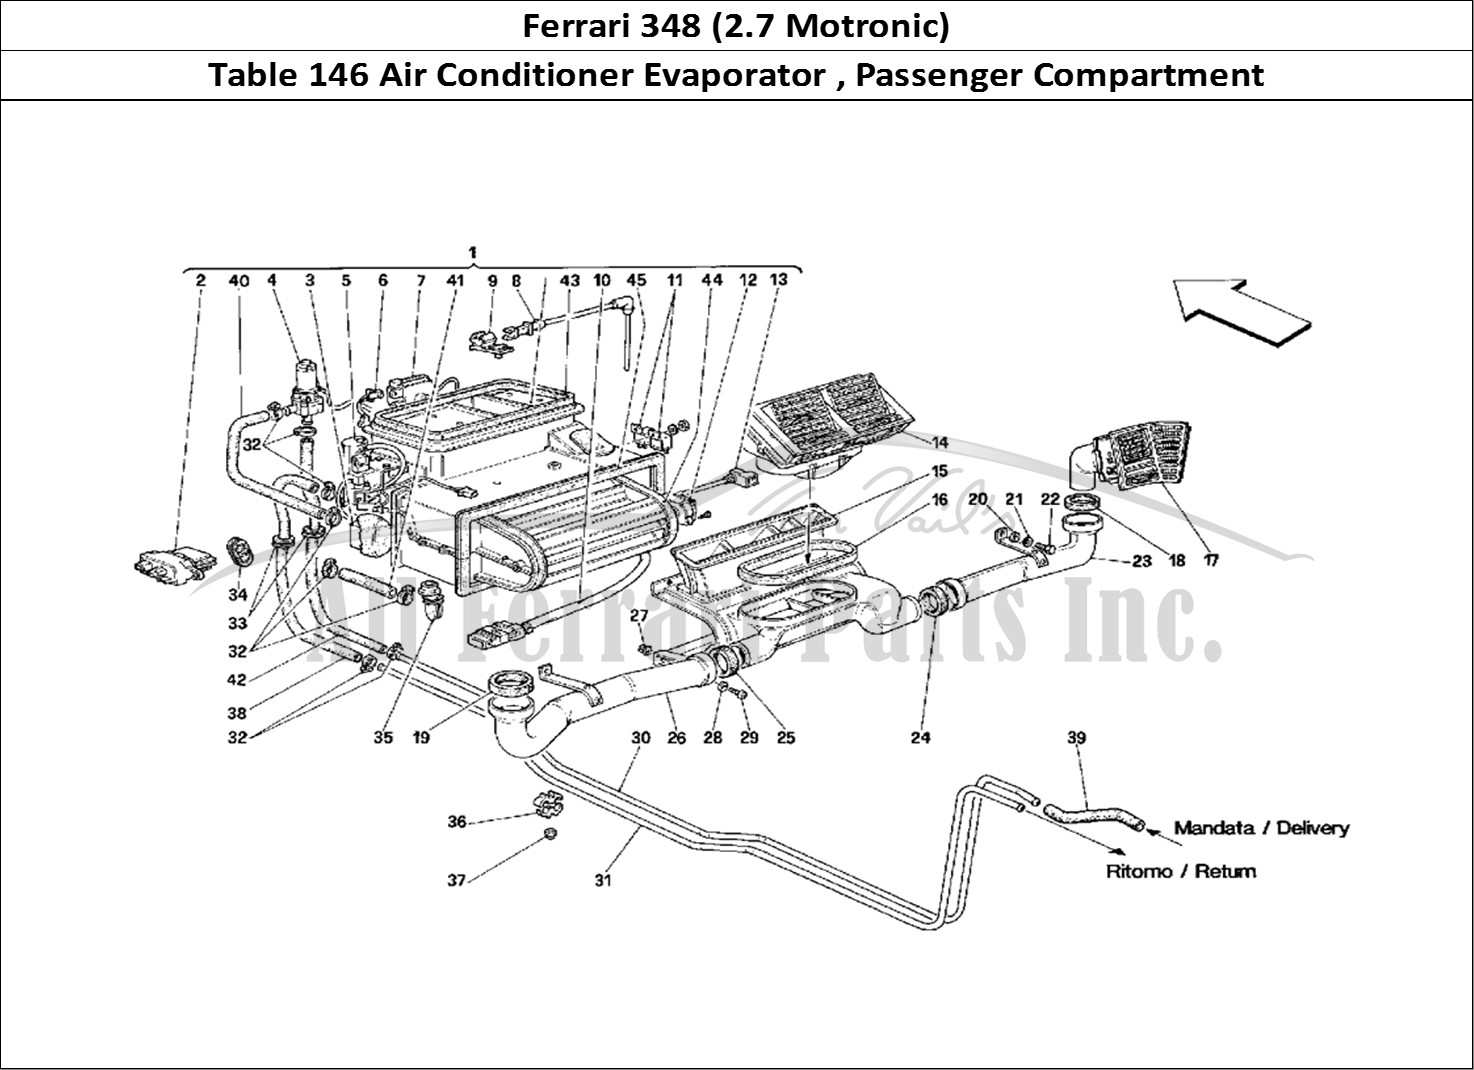 Ferrari Parts Ferrari 348 (2.7 Motronic) Page 146 Evaporator Unit and Passe